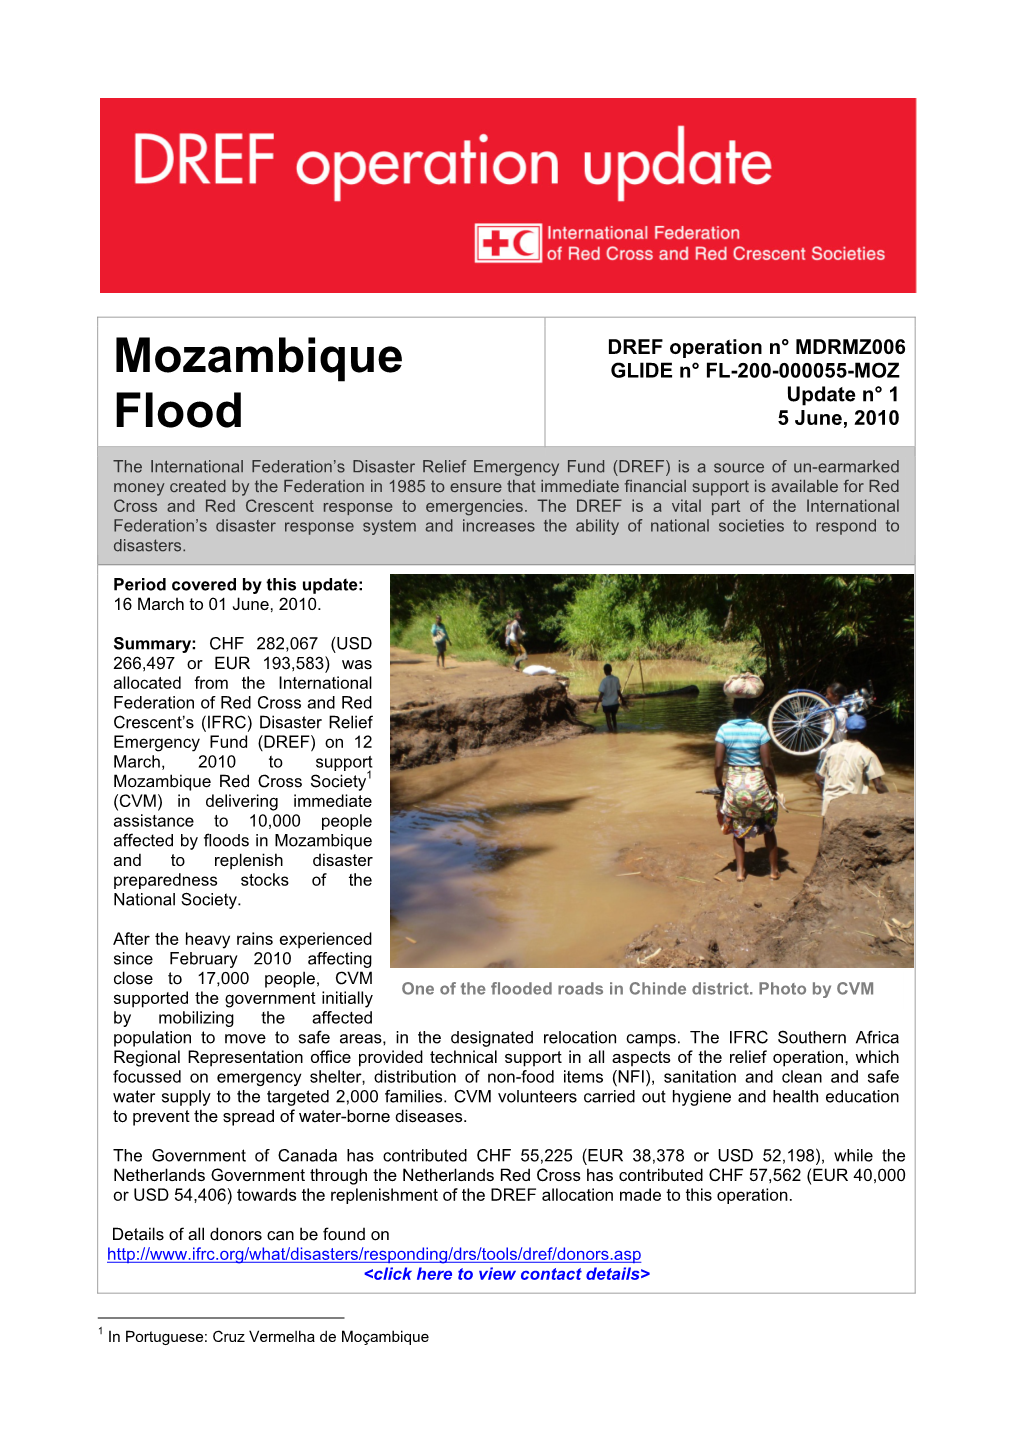 Mozambique Flood